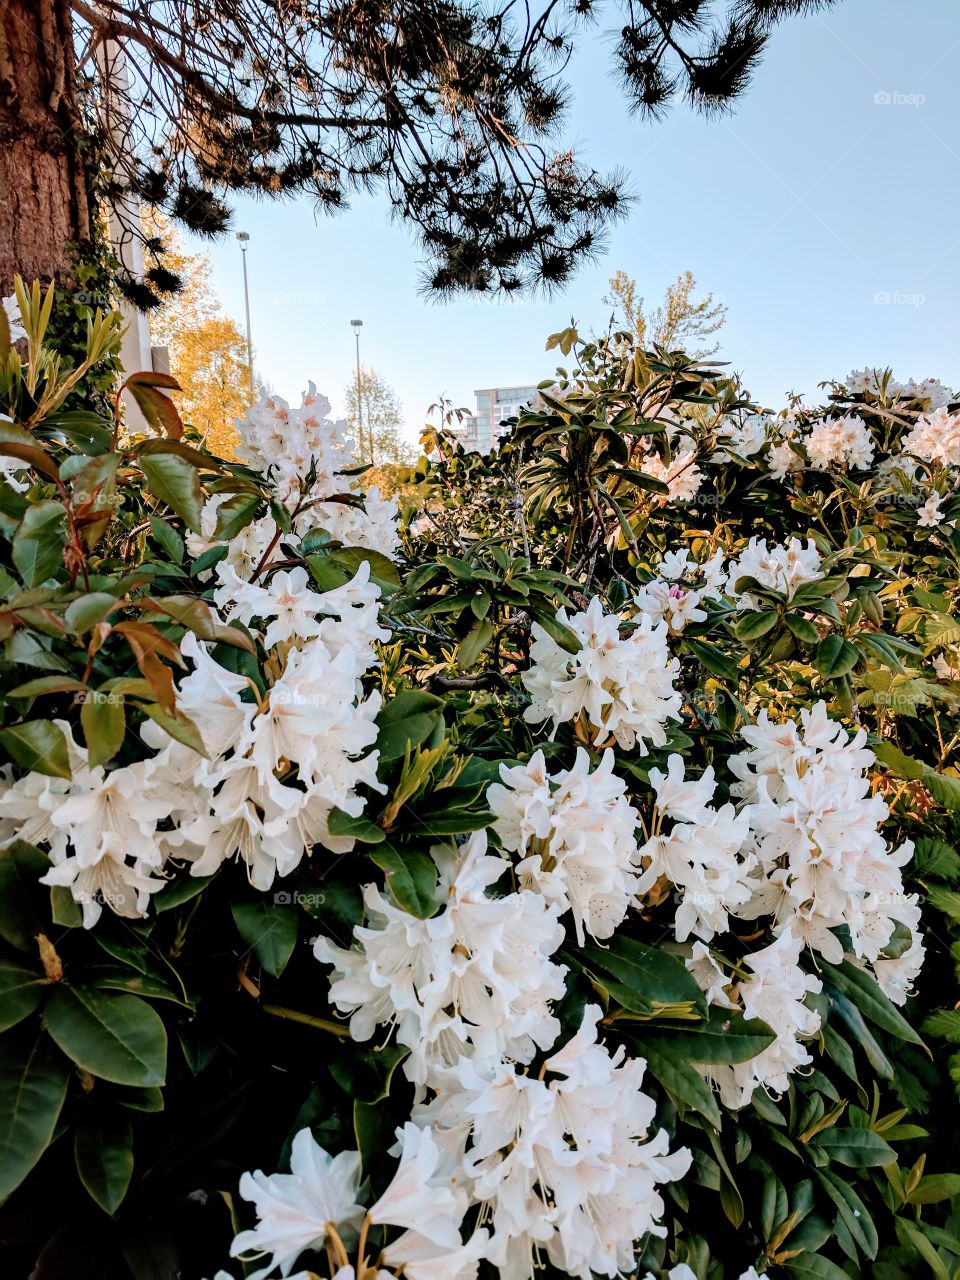 Richmond in bloom